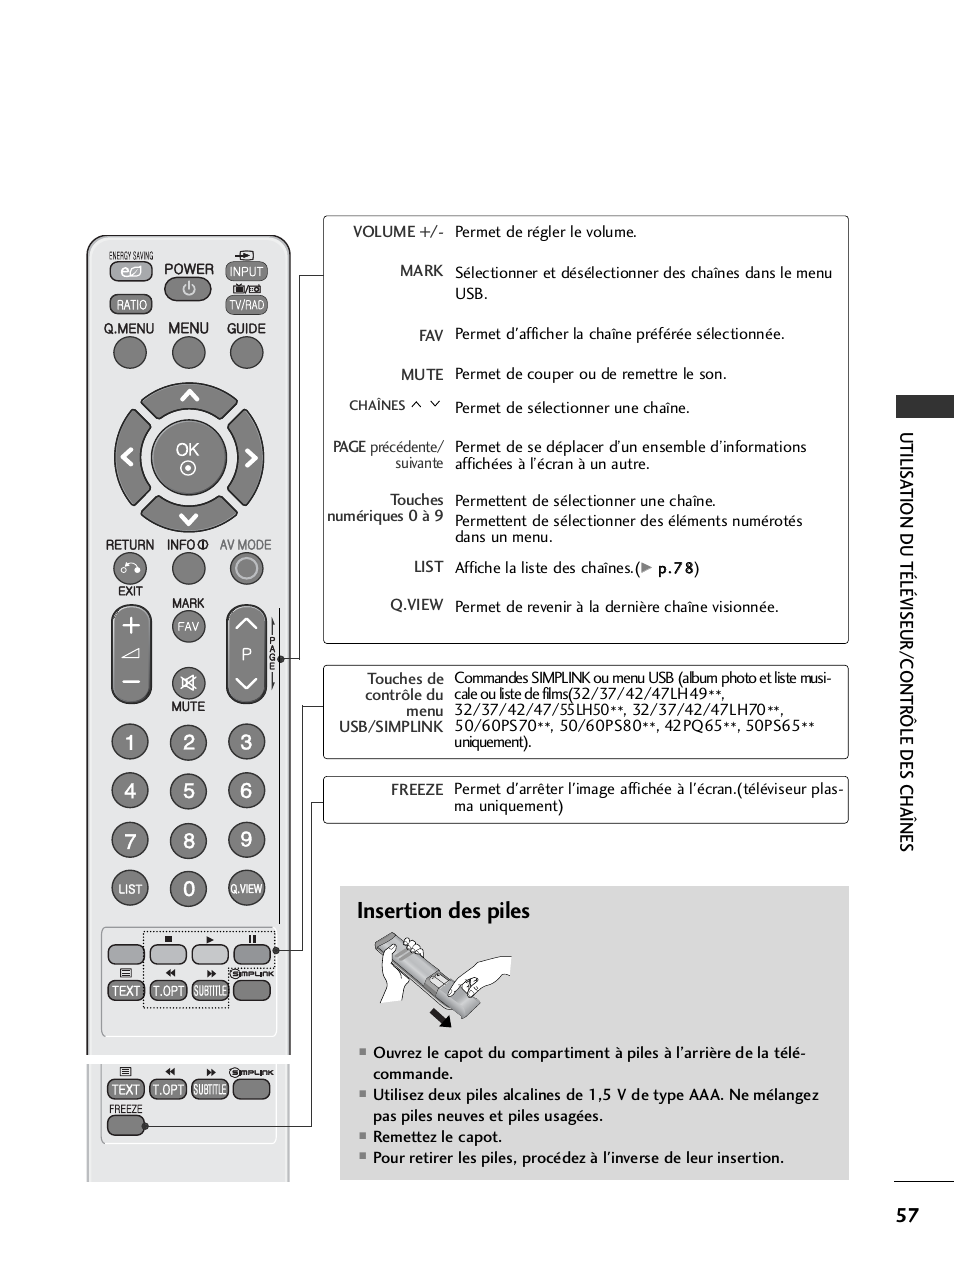 Insertion des piles, Utilis ation du téléviseur/contr ôle des chaînes | LG 32LH40 Manuel d'utilisation | Page 59 / 180